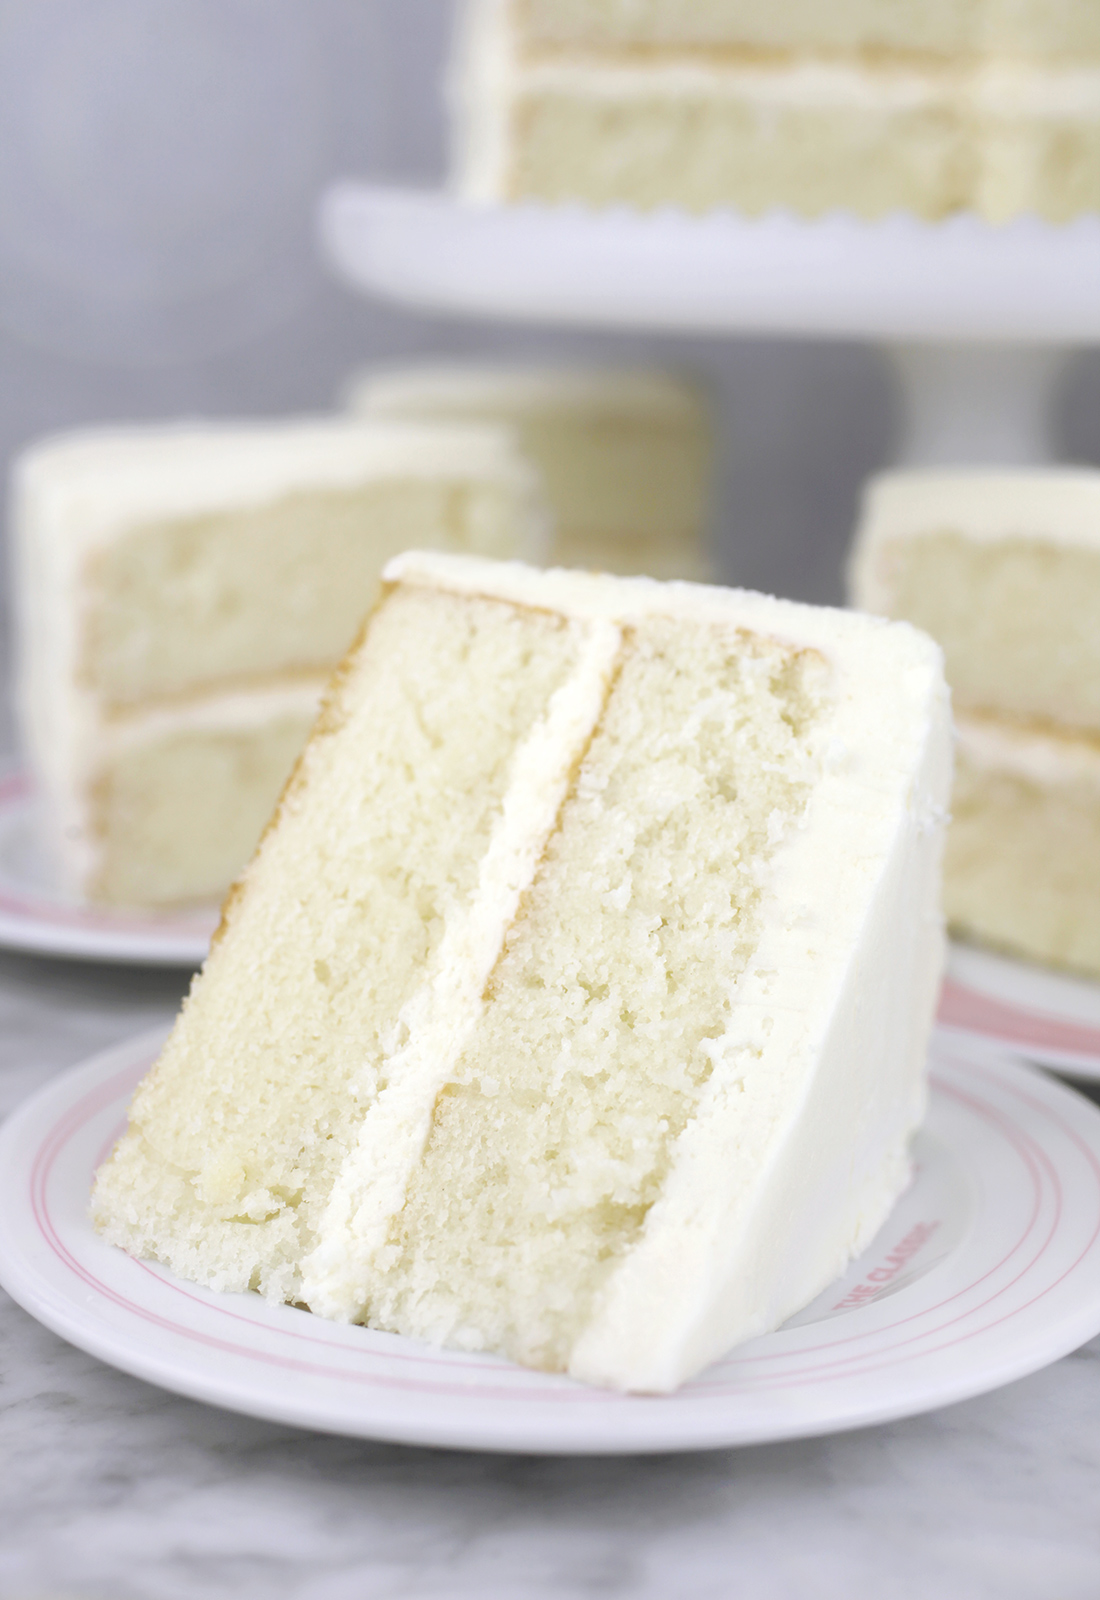 All-Occasion White Cake